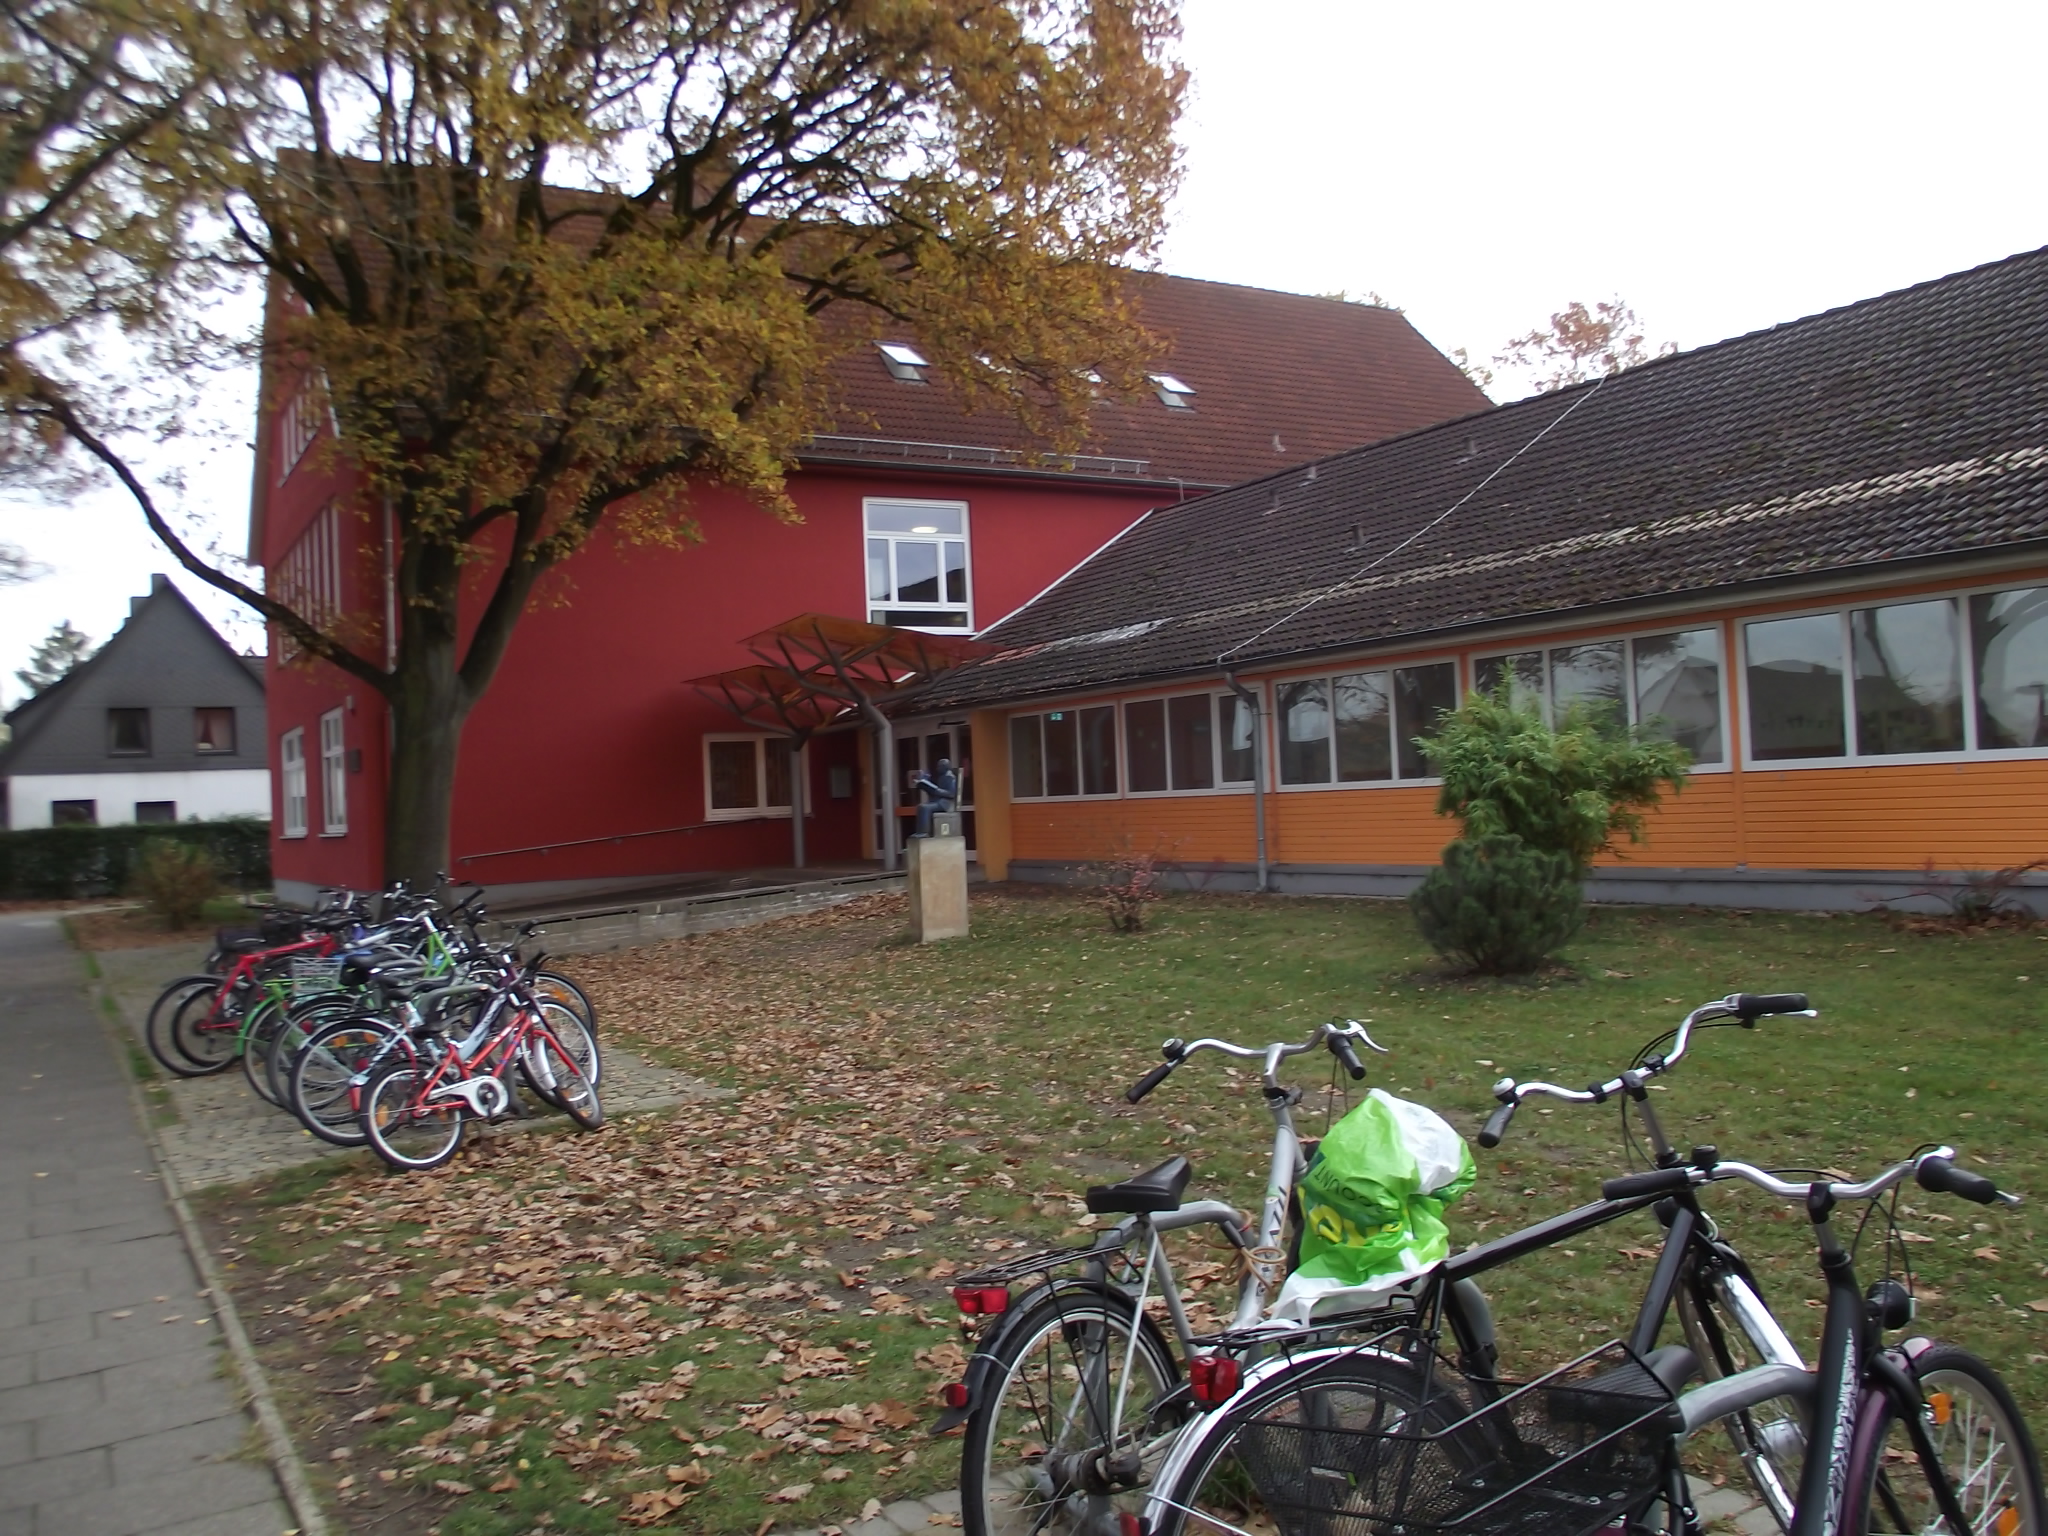 Blick zum Hauptgebäude der Schule, gehört zu den 20 besten Schulen von Deutschland. Alles ist jetzt so bunt hier geworden.